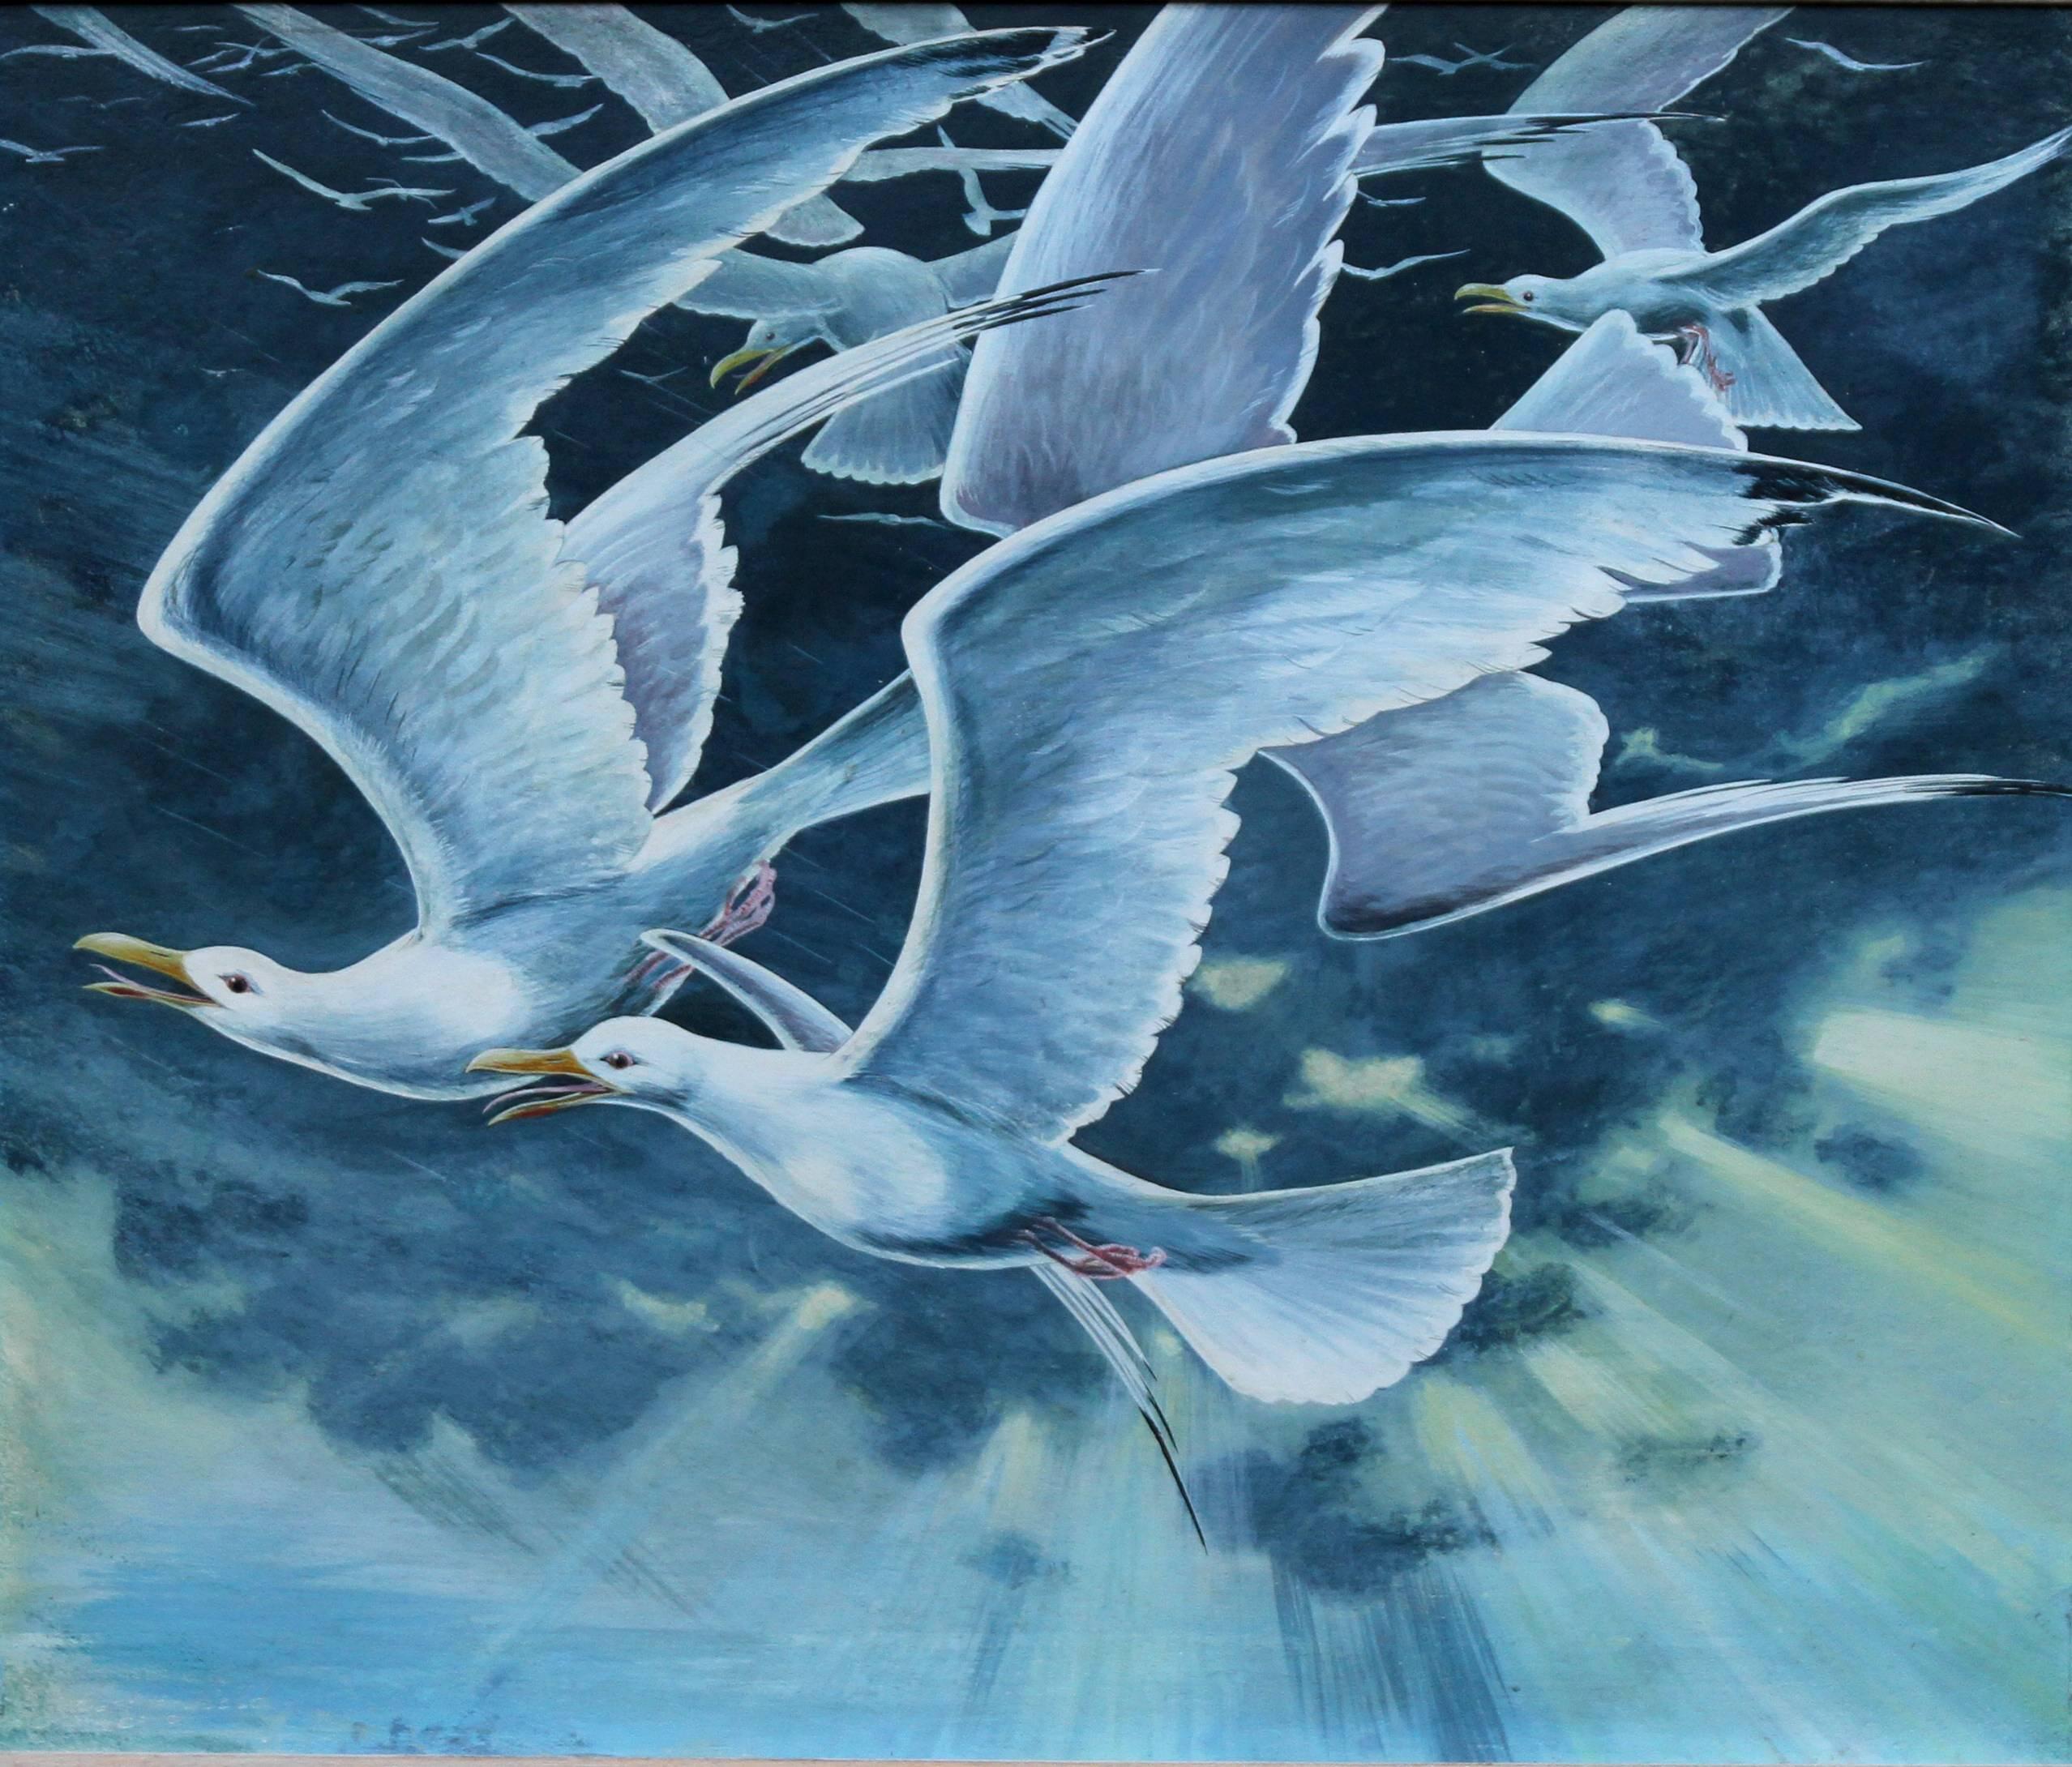 Flock of Seagulls - Peinture à l'huile surréaliste britannique des années 60 représentant des oiseaux en vol - Painting de Stuart Maxwell Armfield